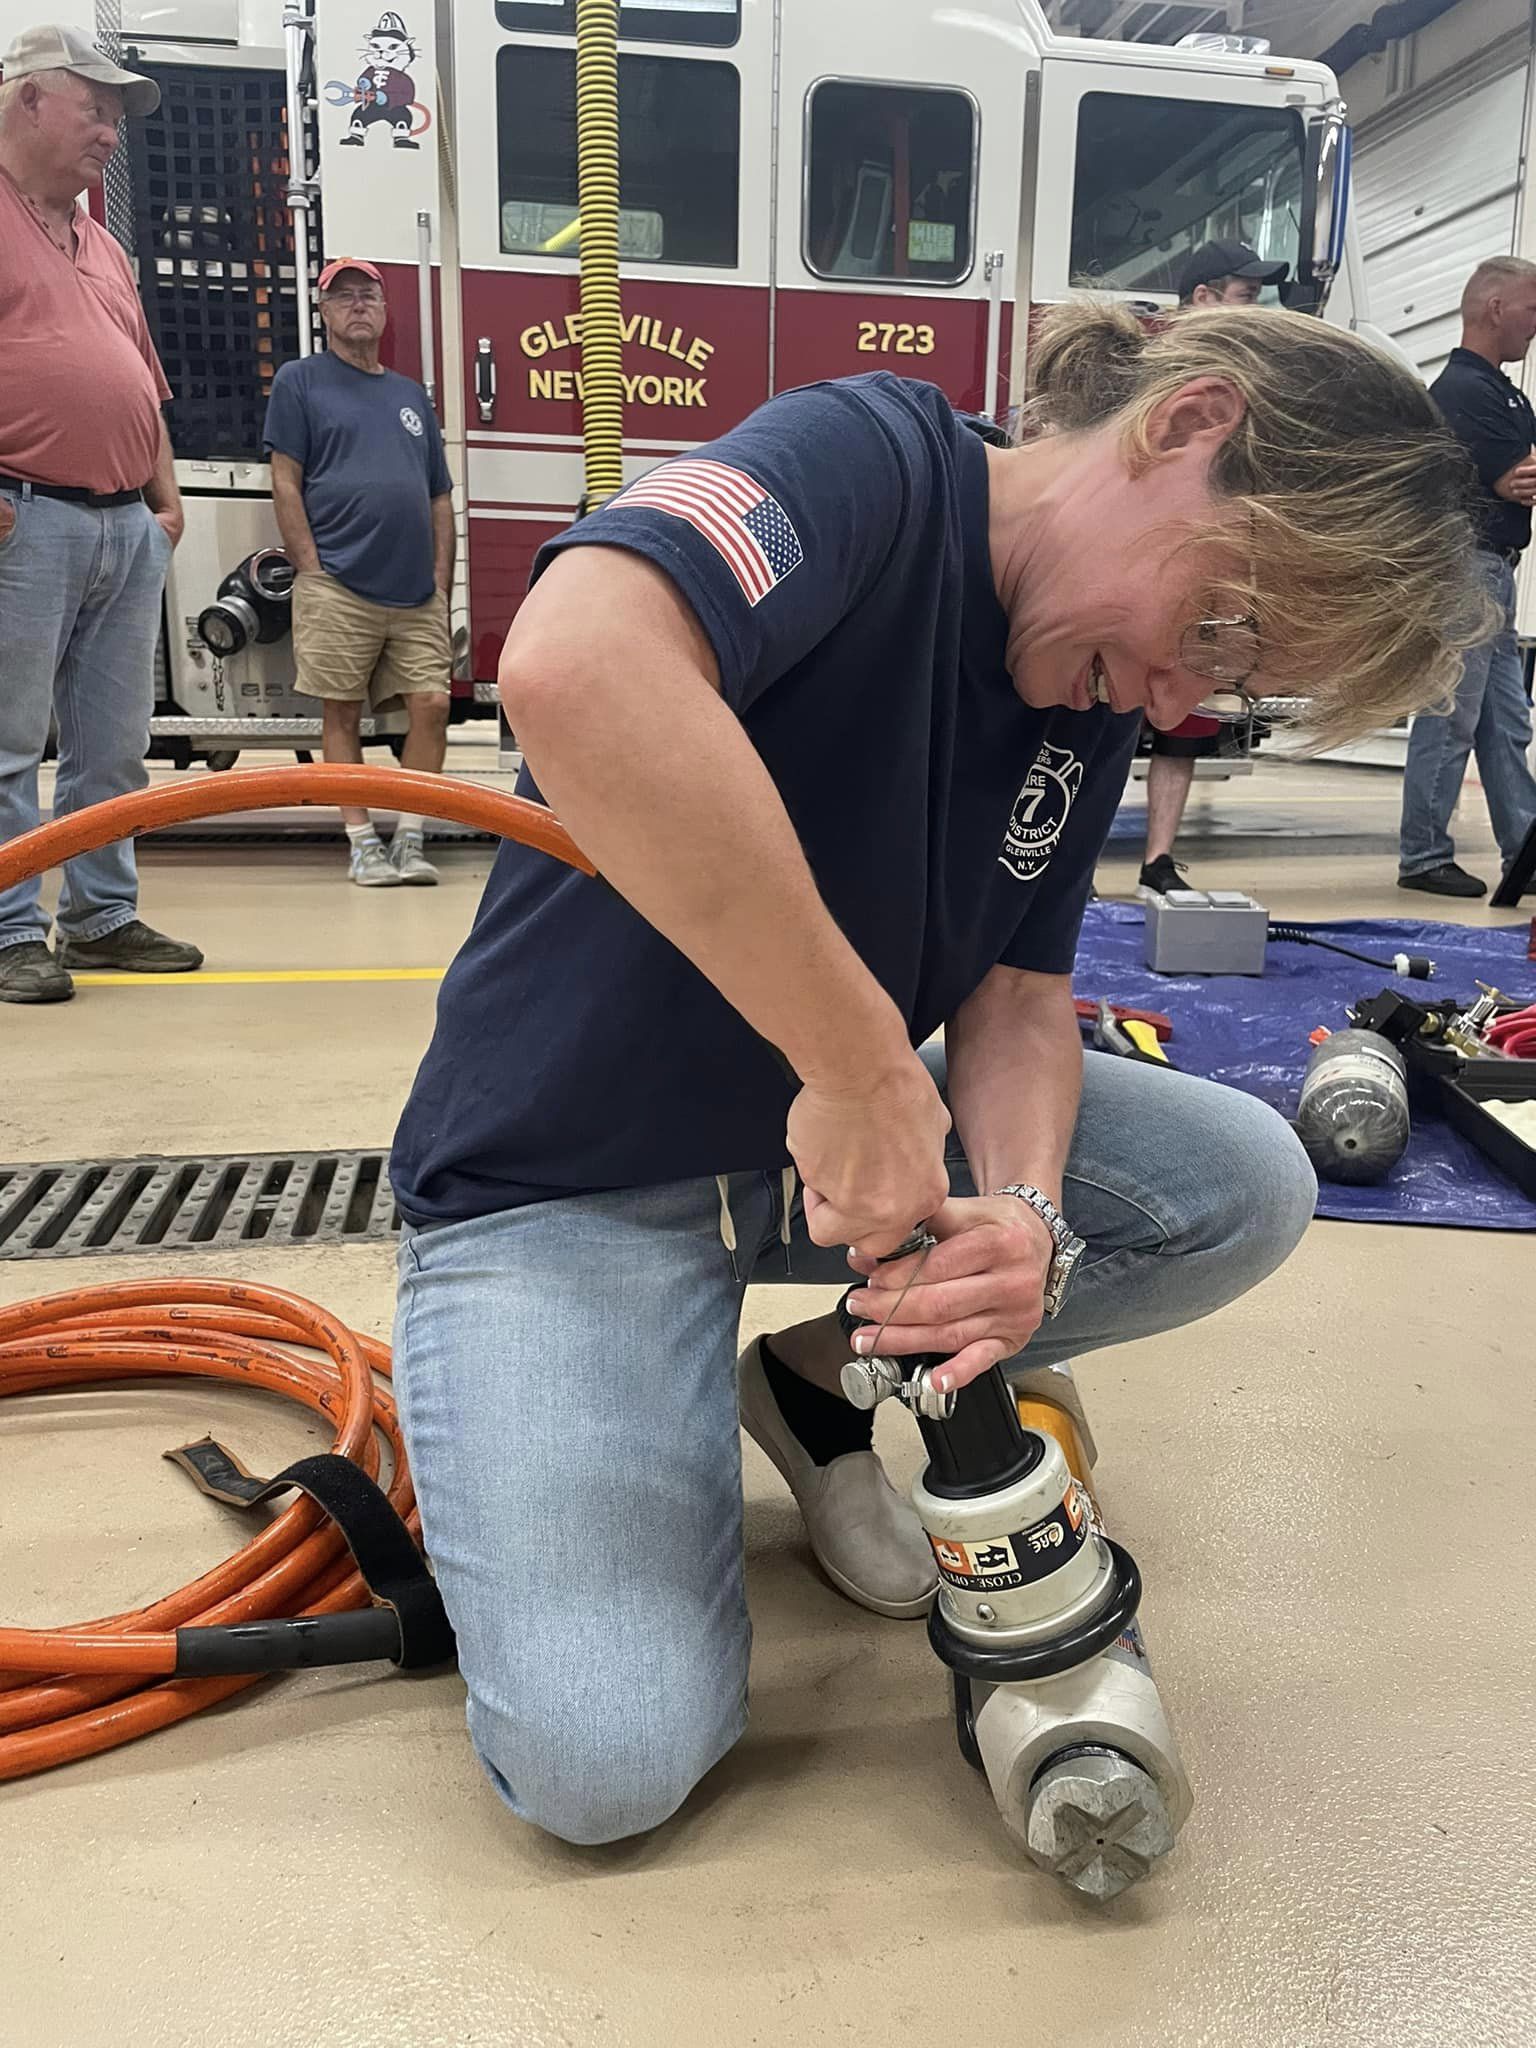 female firefighter fixing equipment